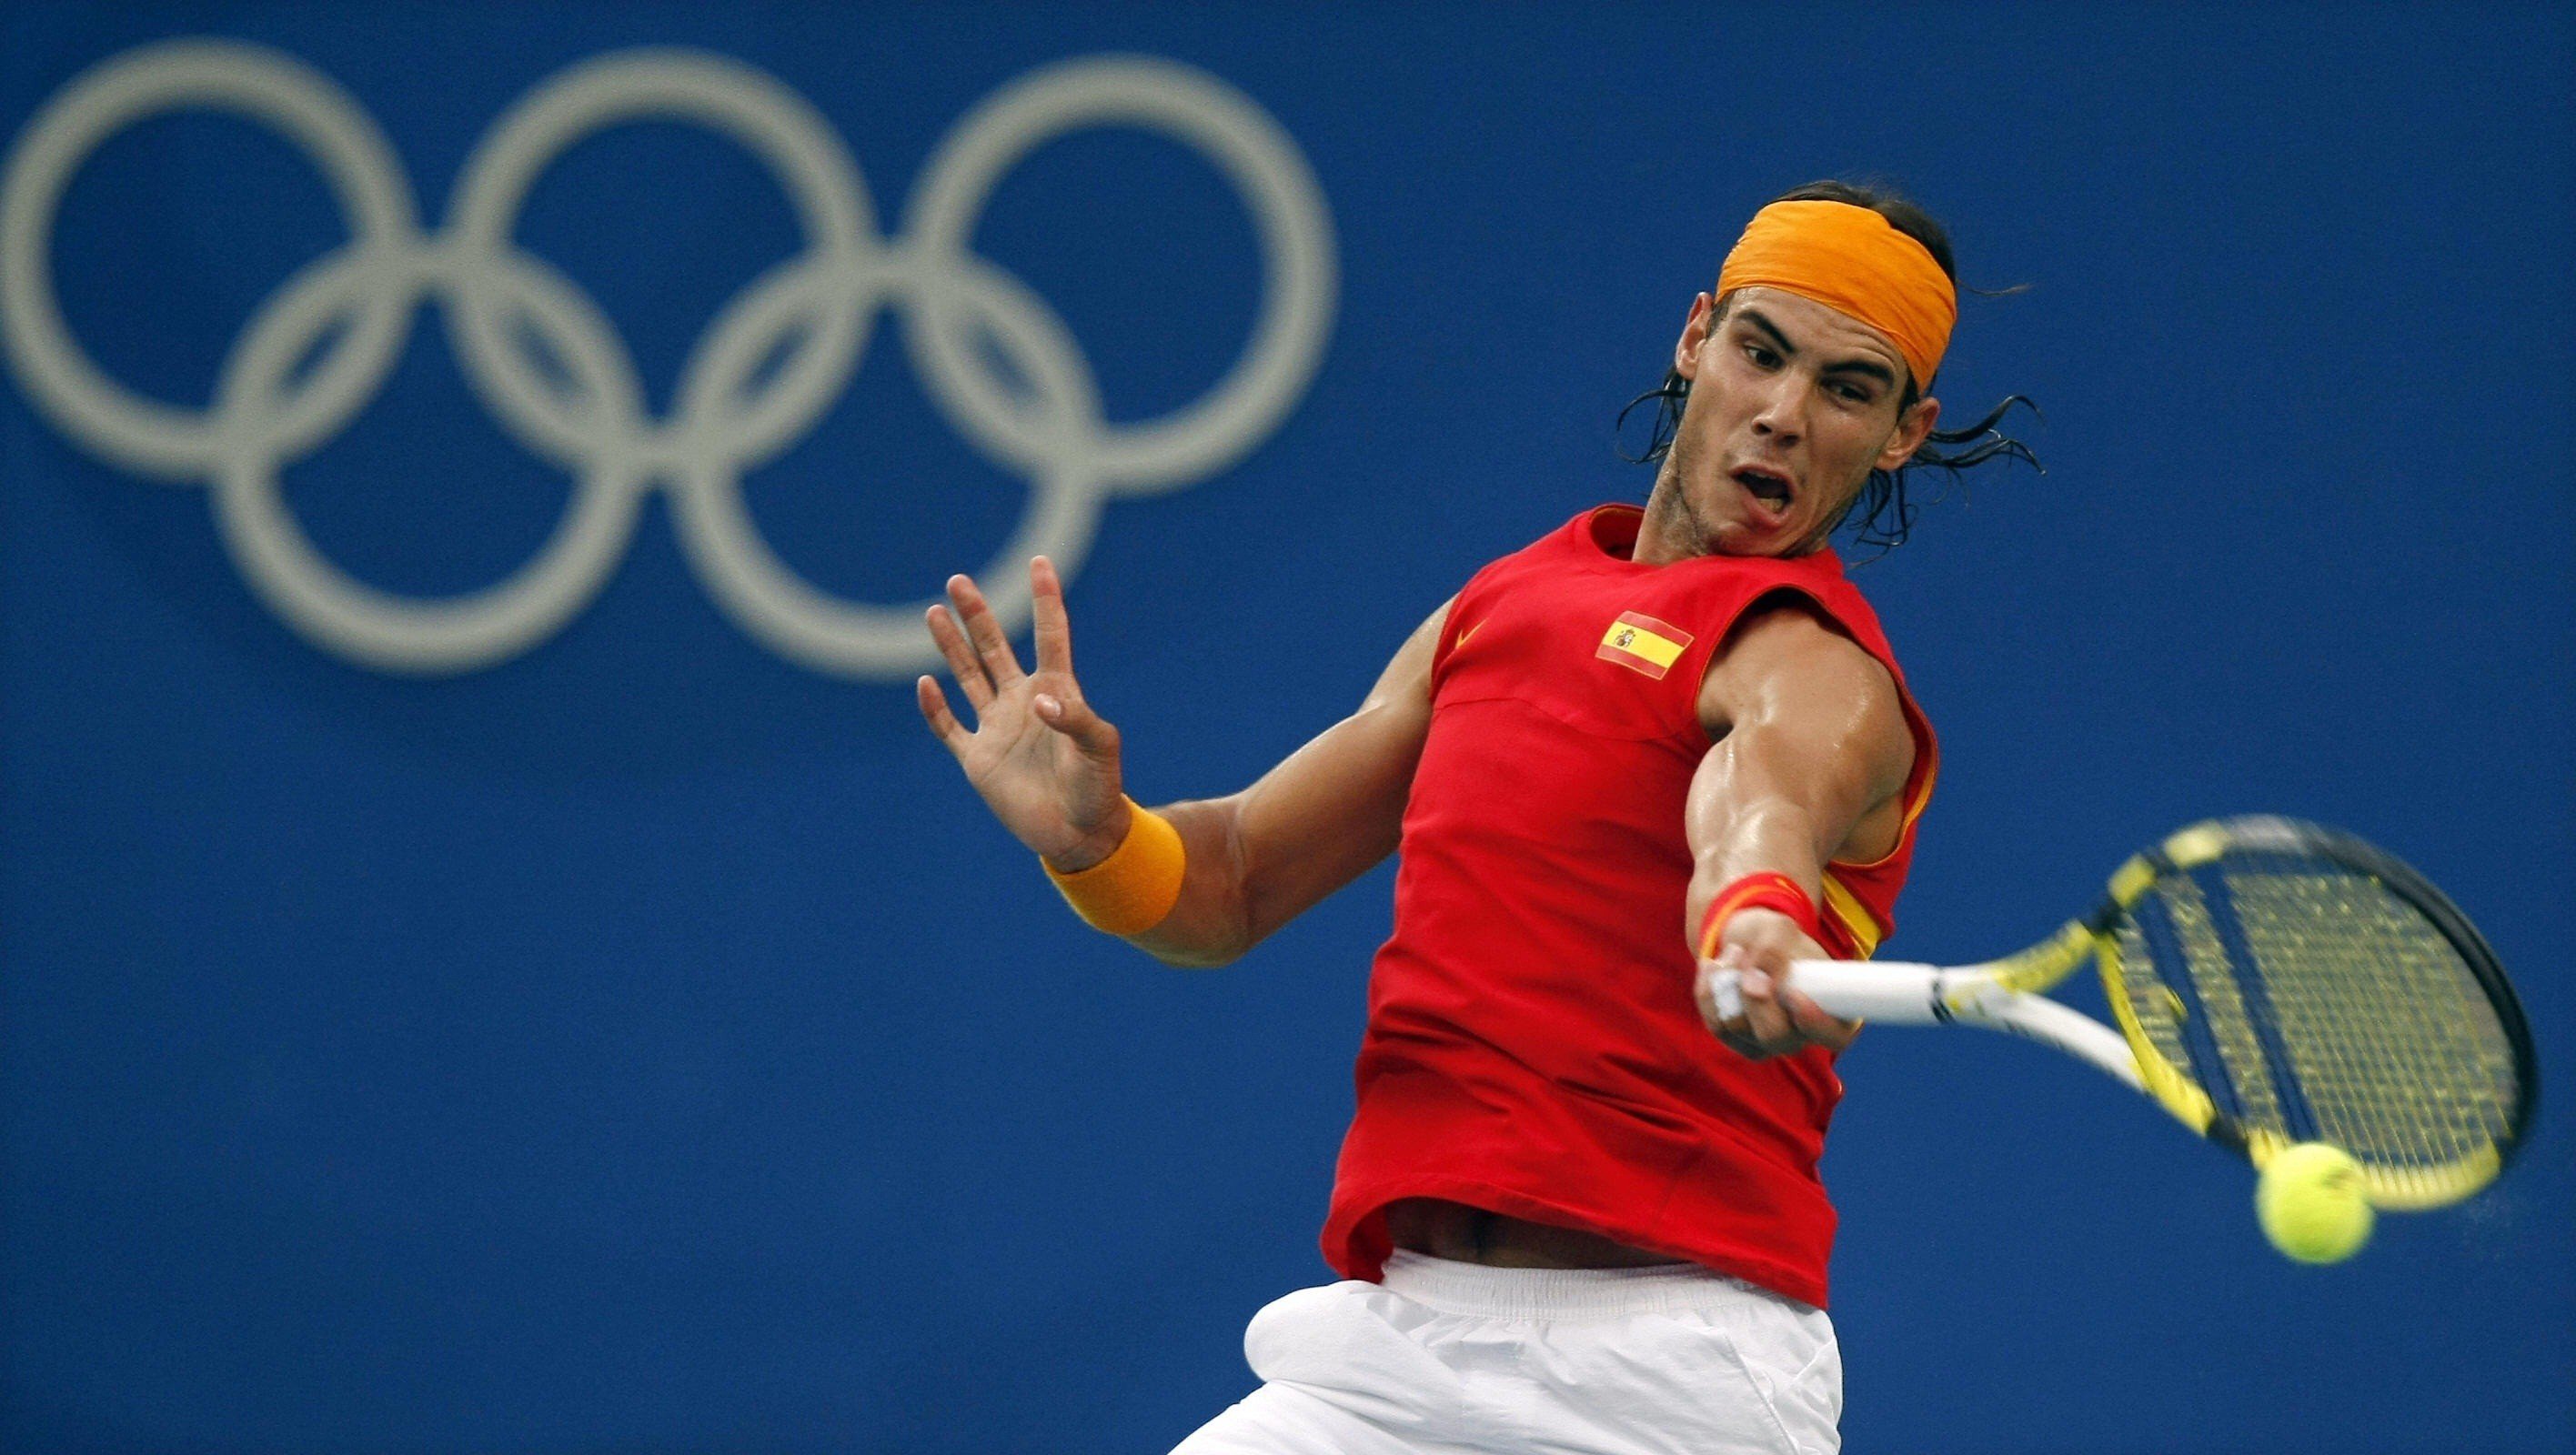 rafael, Nadal, Tennis, Hunk, Spain, 6 Wallpapers HD / Desktop and